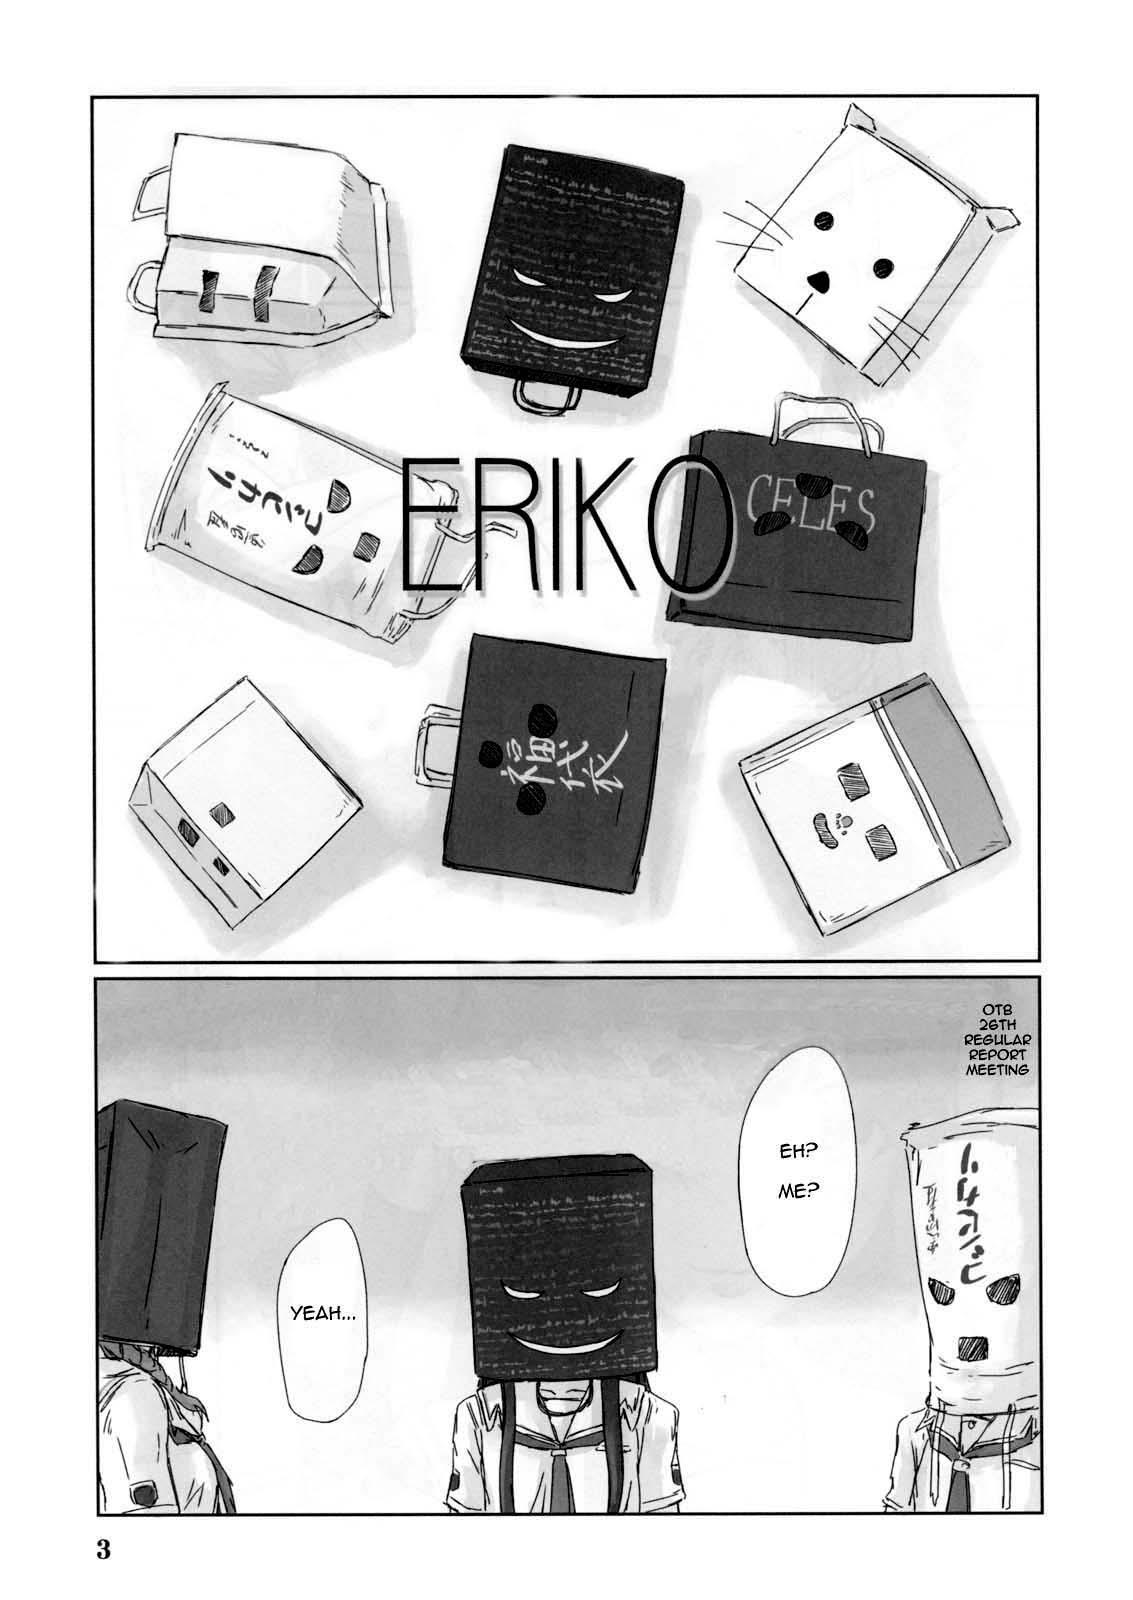 Jerkoff ERIKO - Kimikiss Pattaya - Page 3